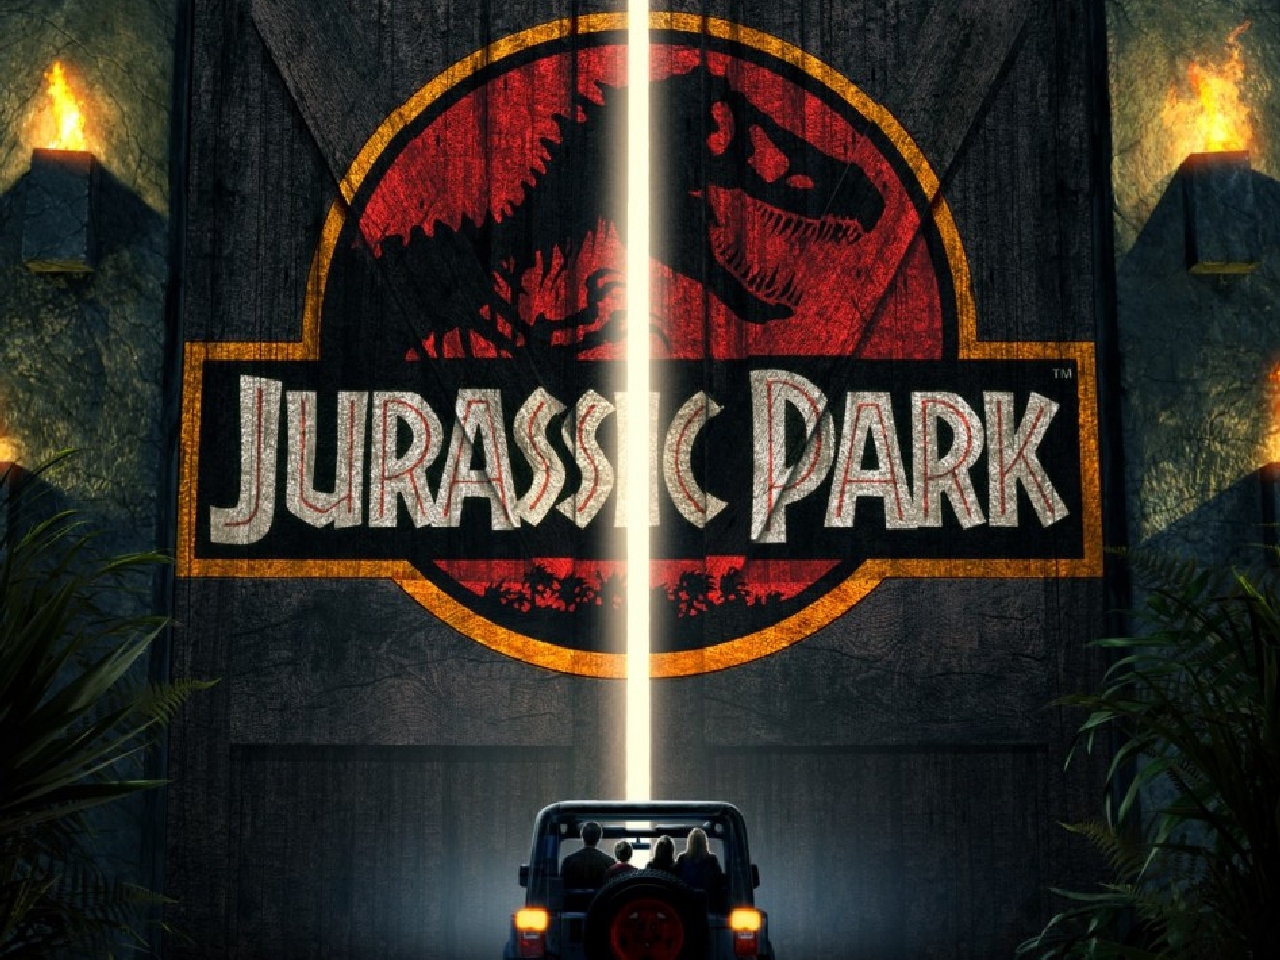 74+] Jurassic Park Wallpapers - WallpaperSafari